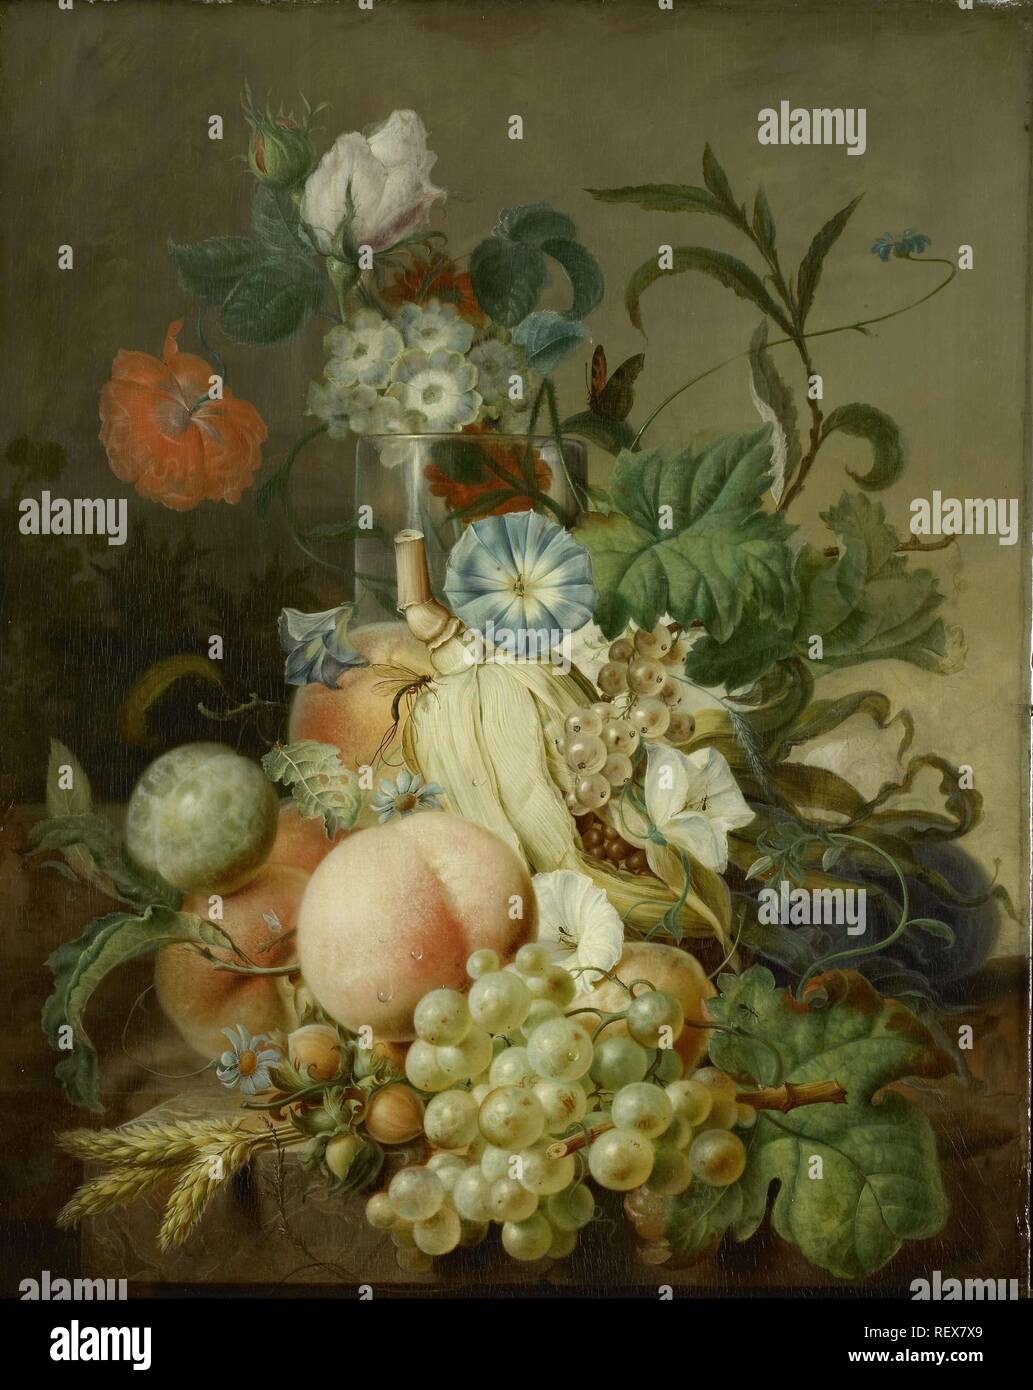 Stillleben mit Blumen und Obst. Datierung: 1800 - 1808. Maße: H 40,3 cm x W 31,8 cm x T 1,7 cm; d 7 cm. Museum: Rijksmuseum, Amsterdam. Autor: Jan Evert Morel (I). Stockfoto